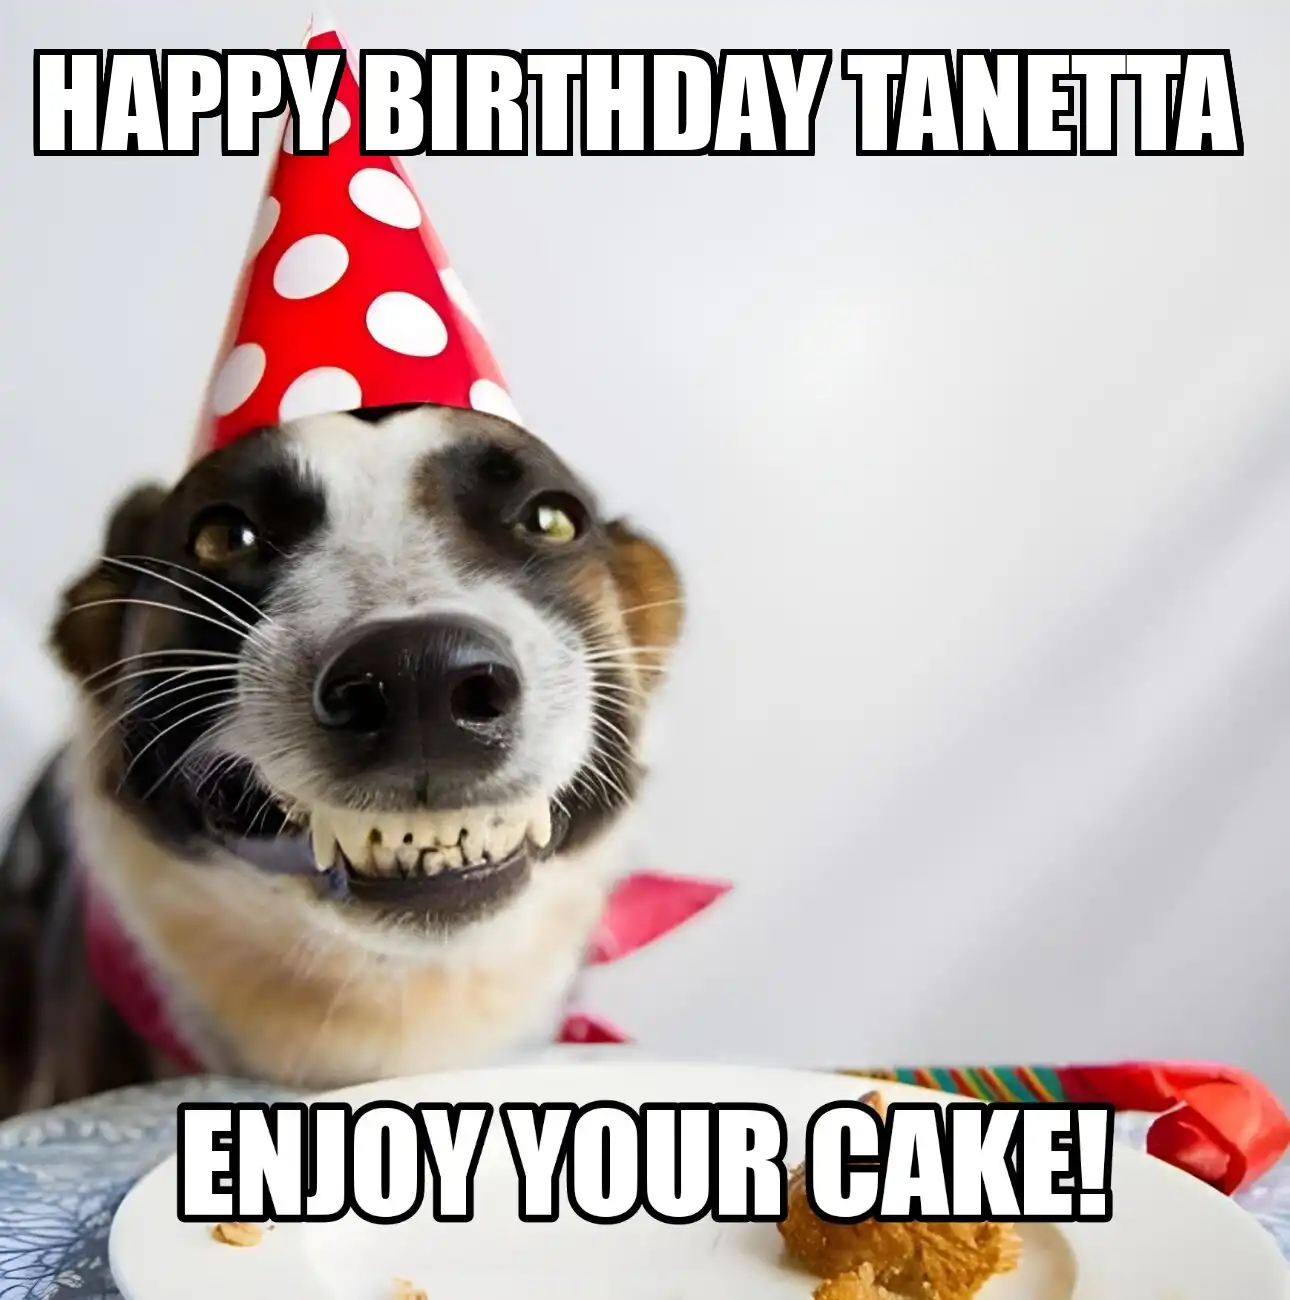 Happy Birthday Tanetta Enjoy Your Cake Dog Meme